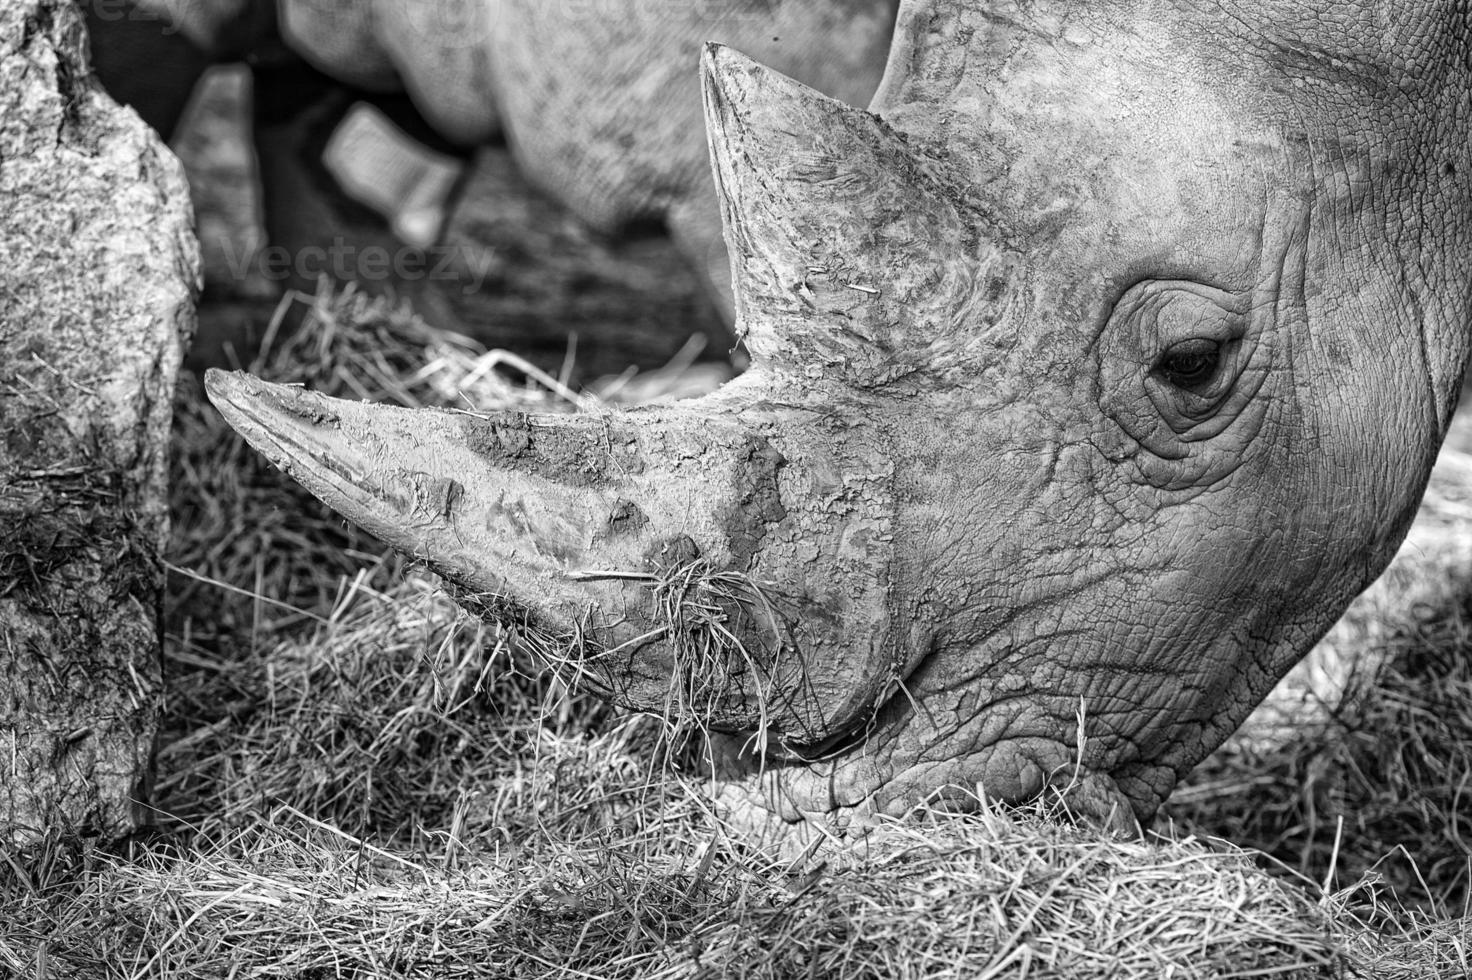 retrato de rinoceronte branco foto